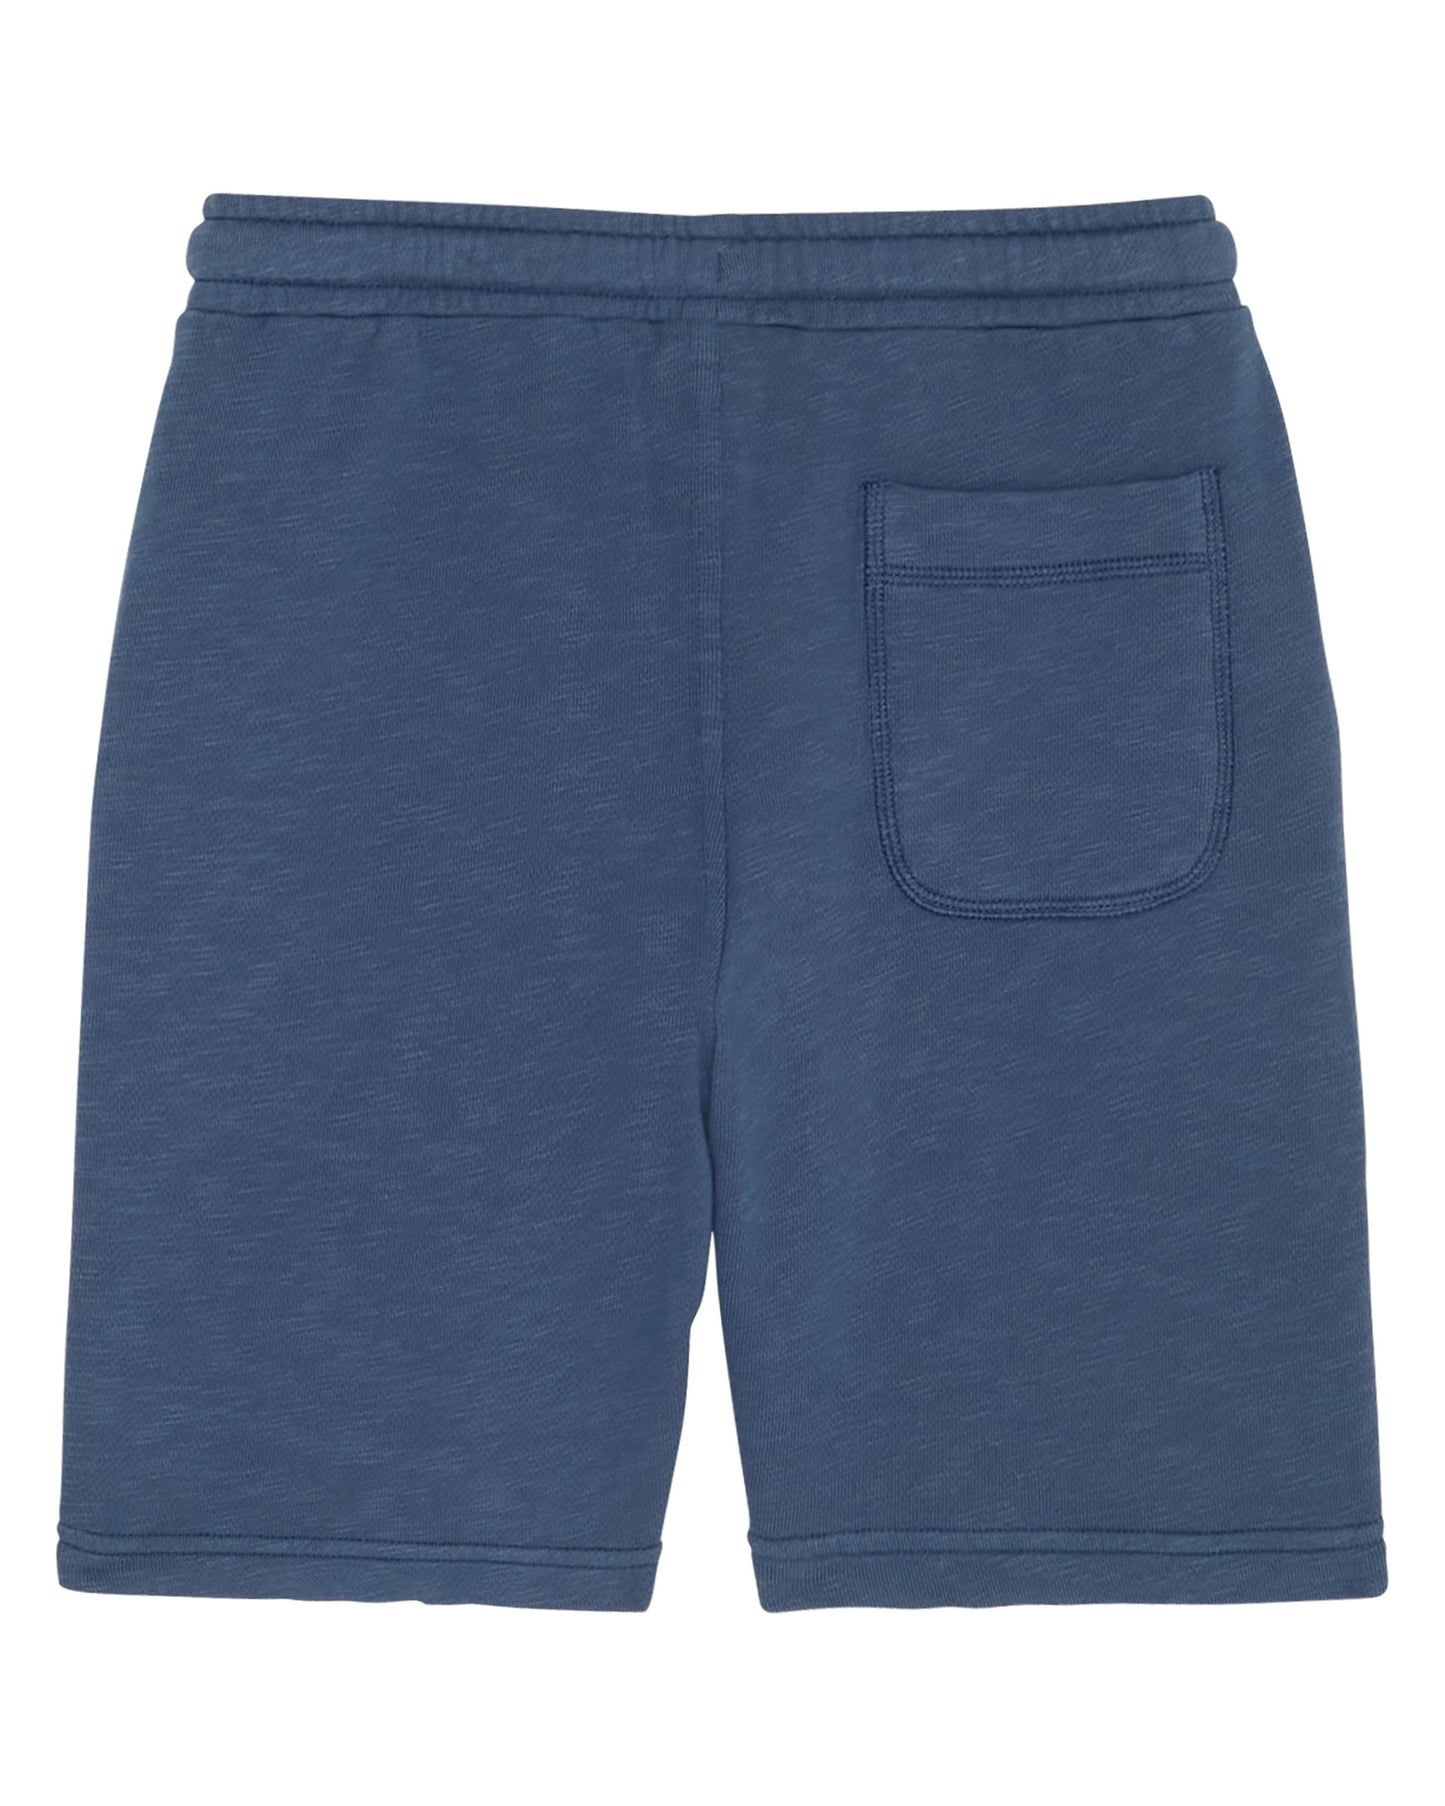 Boys' Cobalt Blue Cotton Short